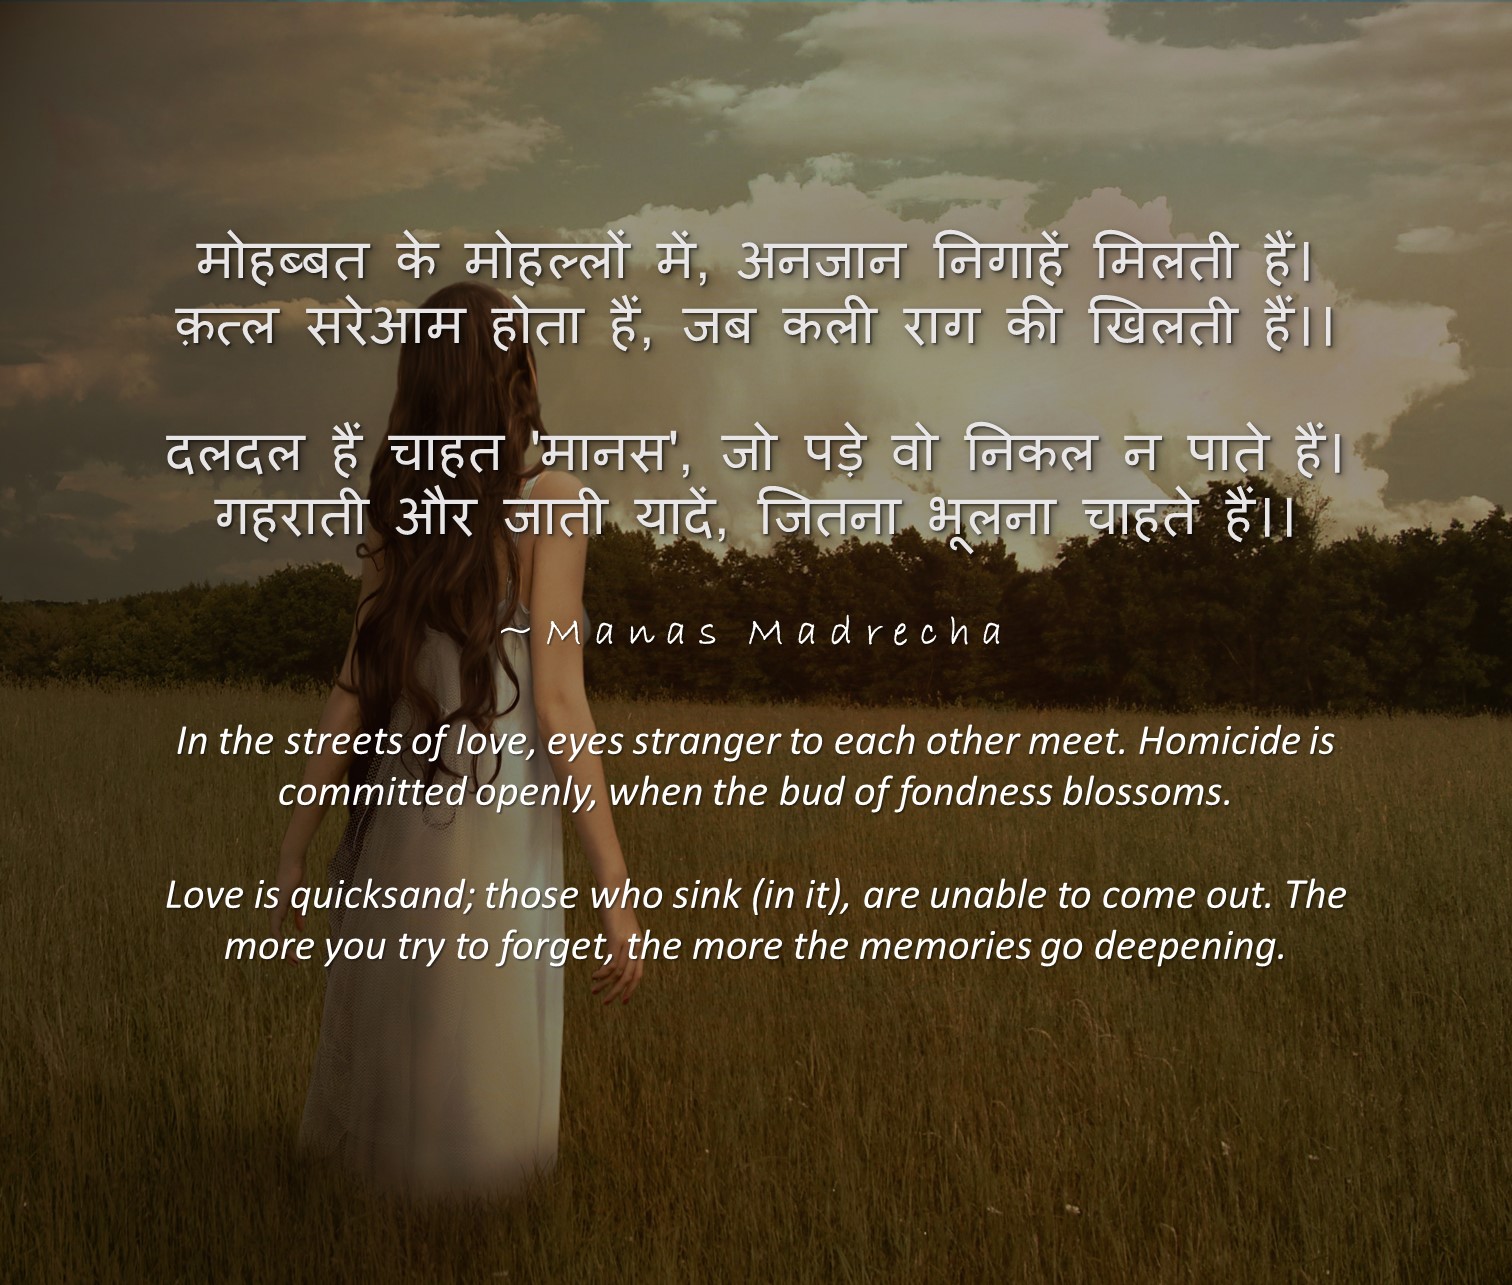 Manas Madrecha Manas Madrecha blog Manas Madrecha poem simplifying universe hindi poem